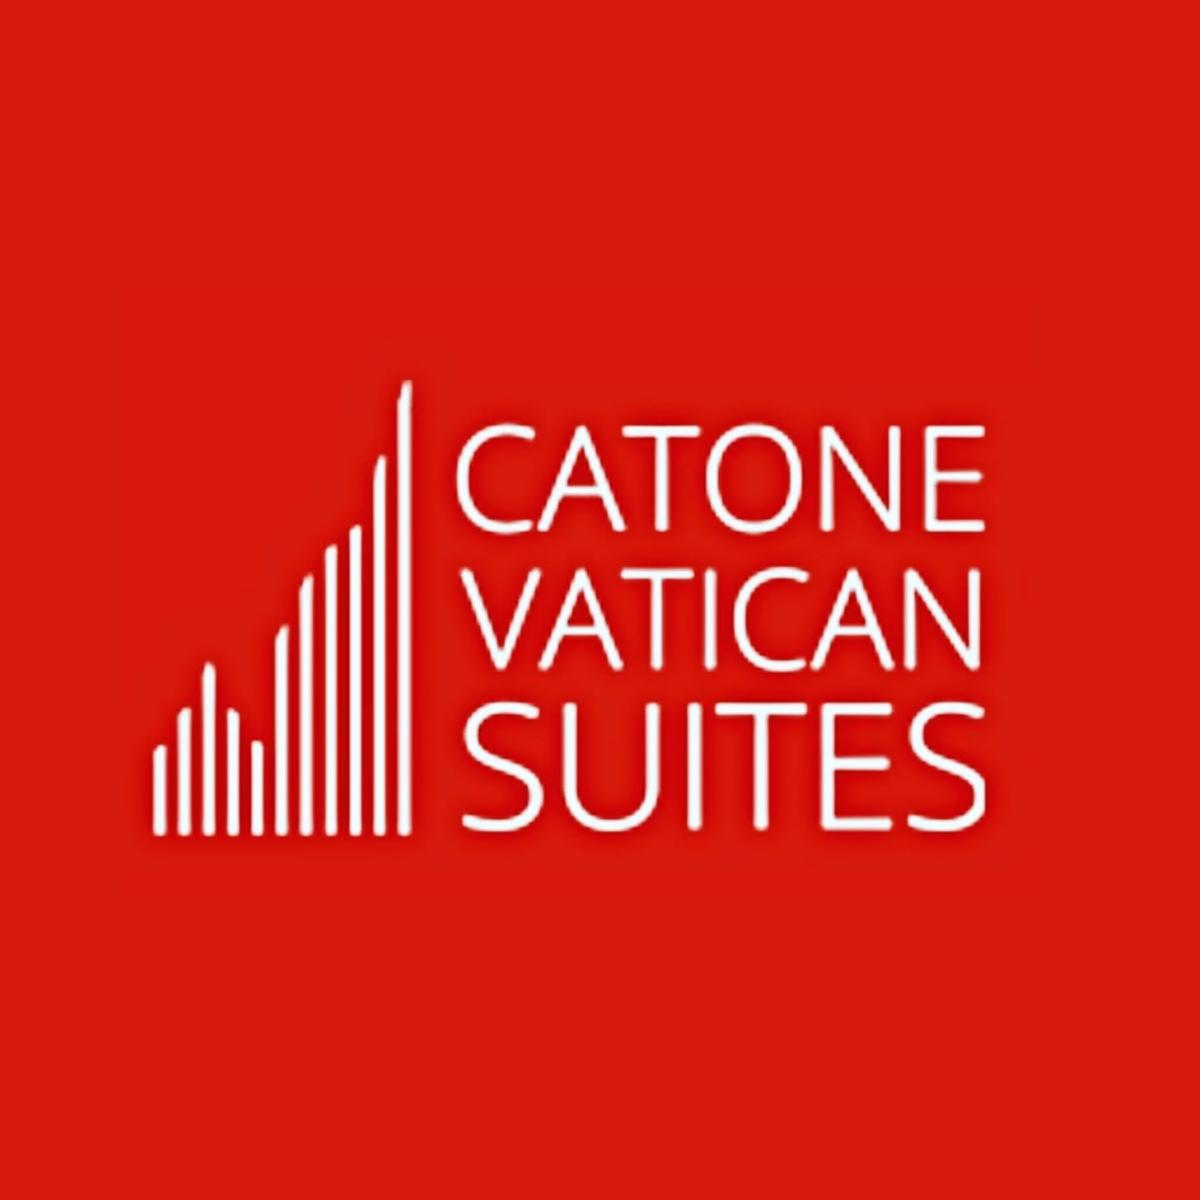 Catone Vatican Suites